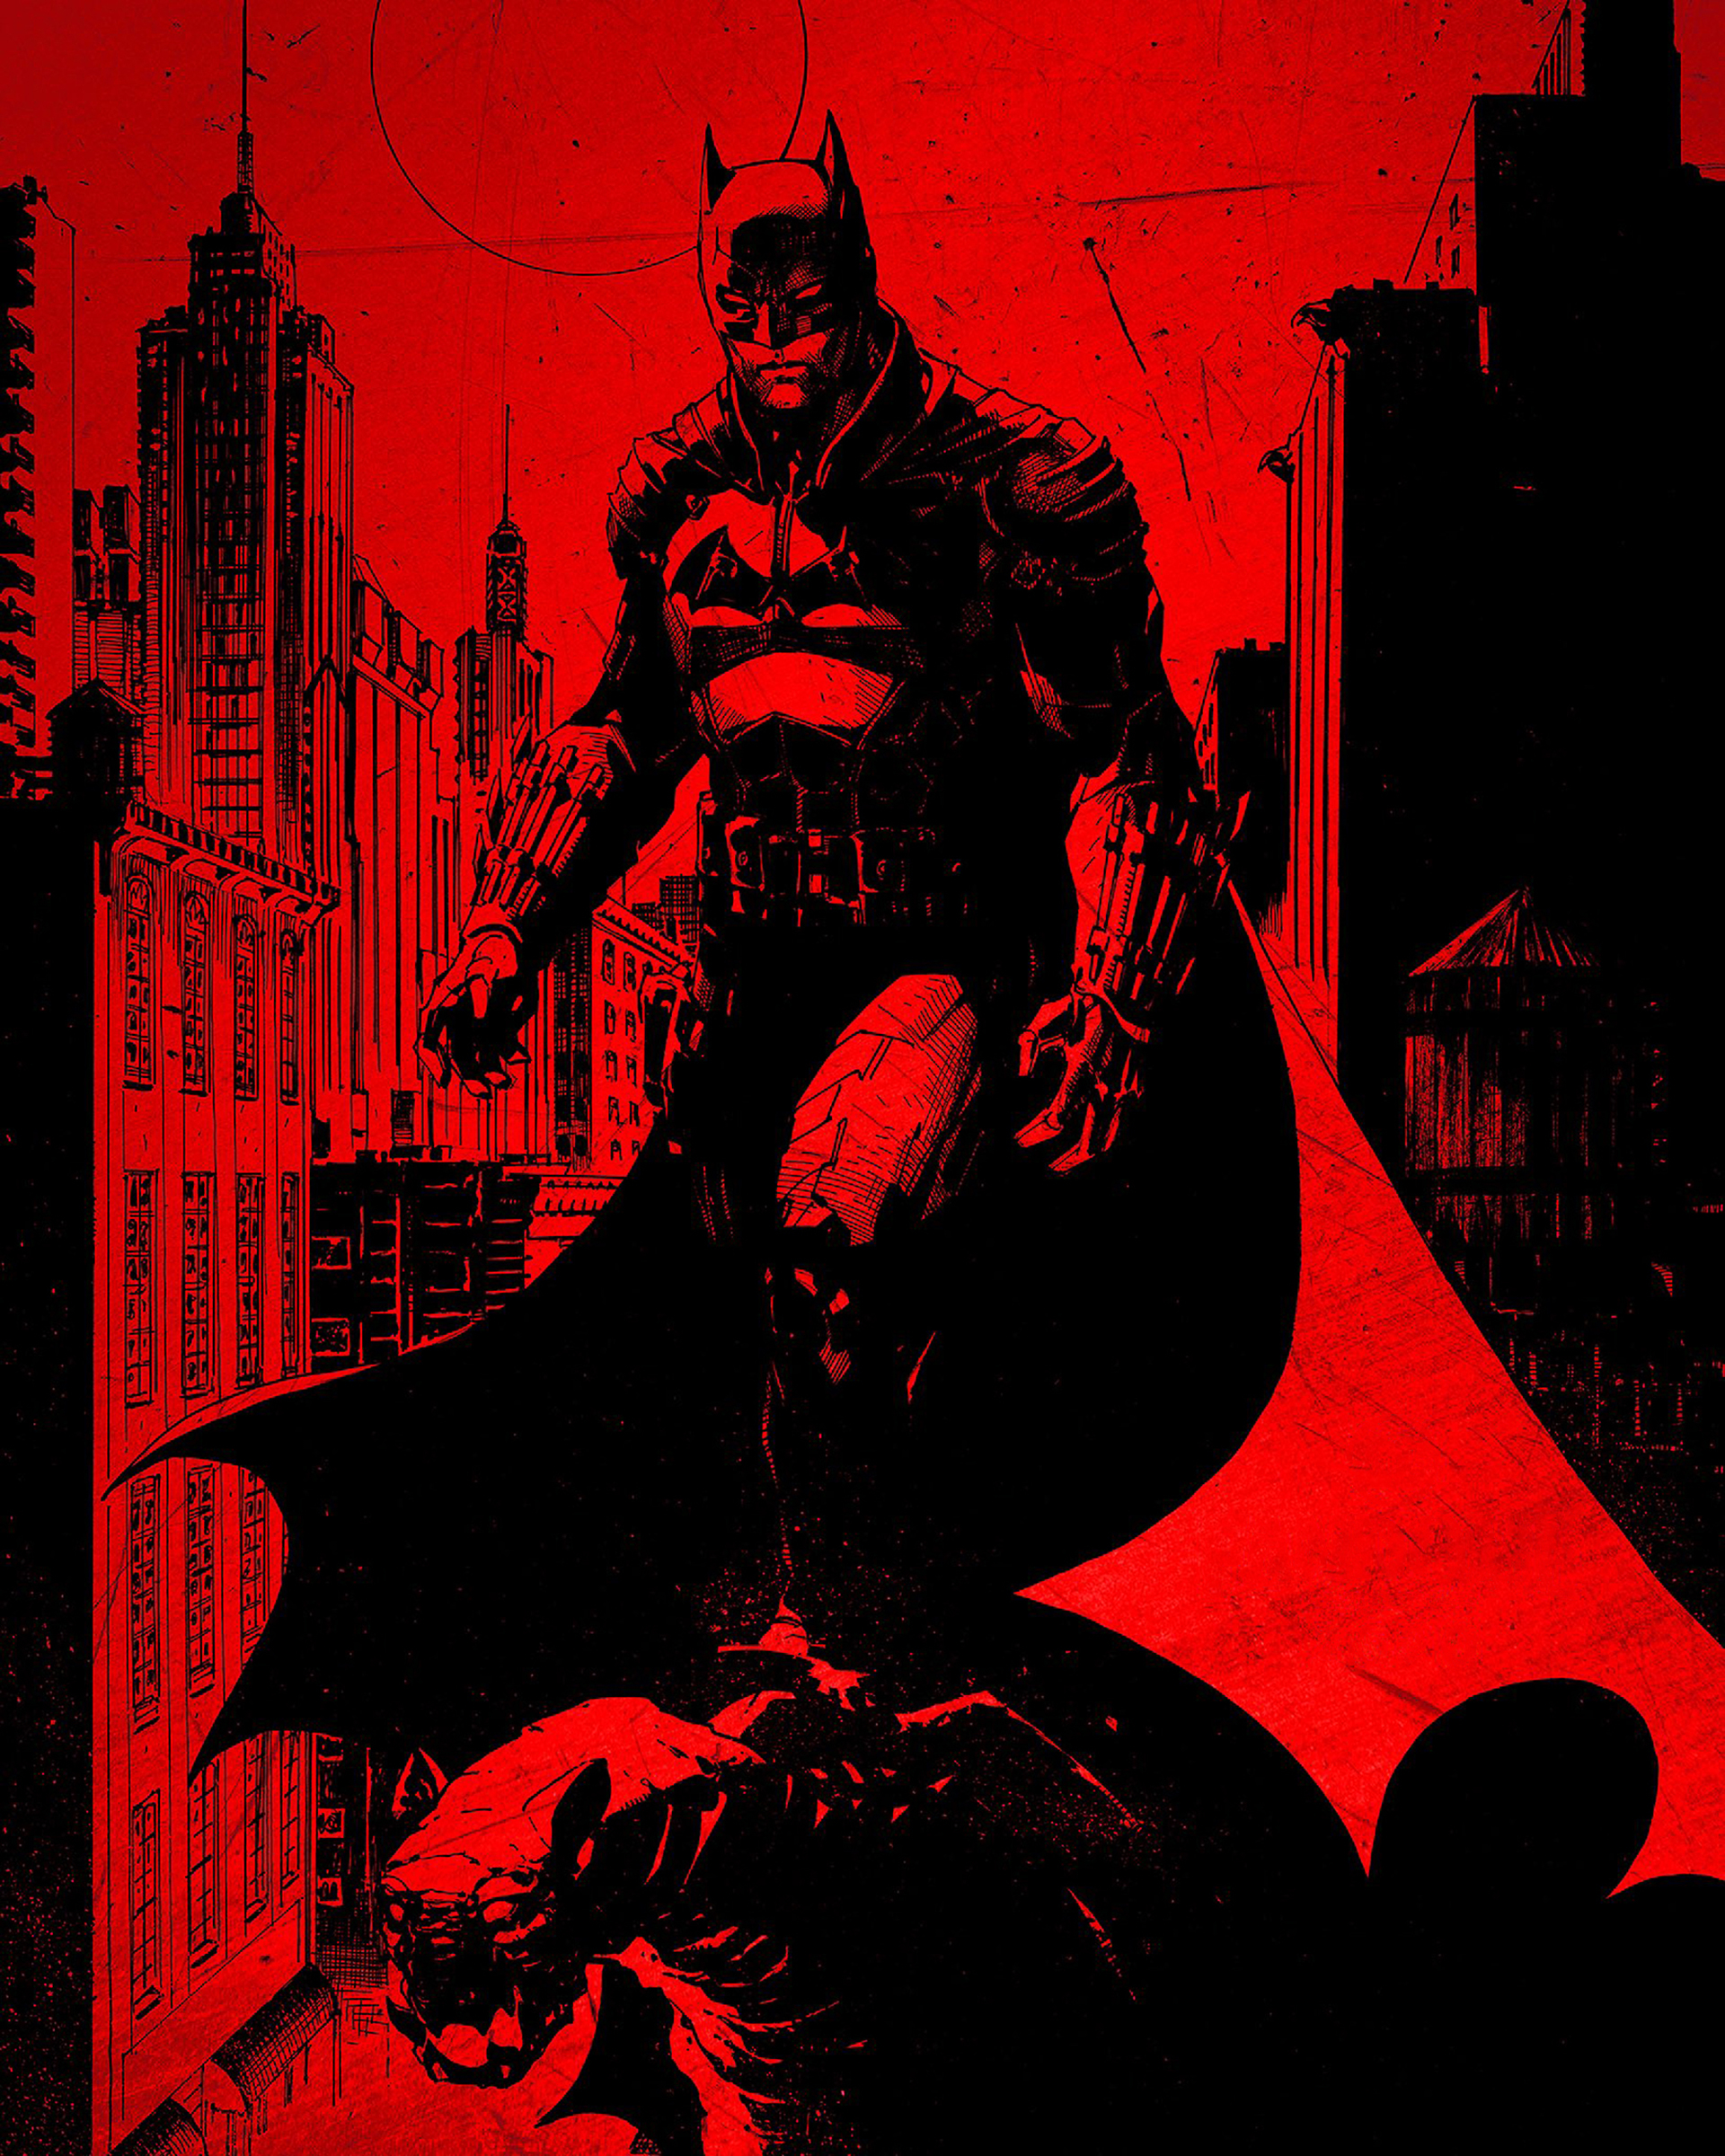 The Batman 2022 PC Wallpapers - Wallpaper Cave